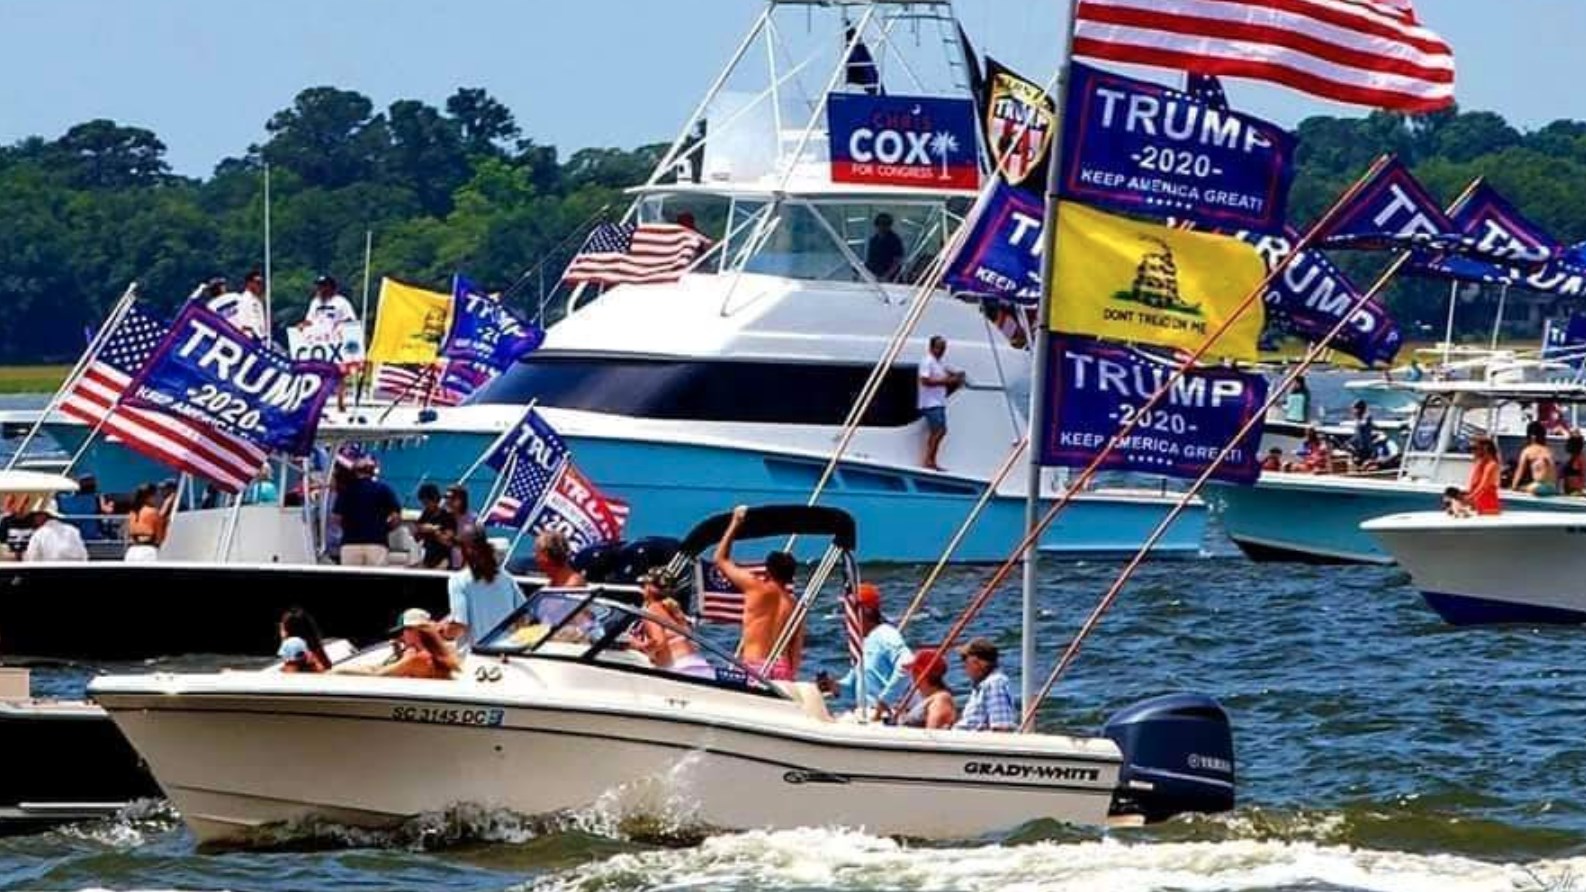 ΗΠΑ: Βυθίστηκαν σκάφη που υποστήριζαν την προεκλογική εκστρατεία του Τραμπ